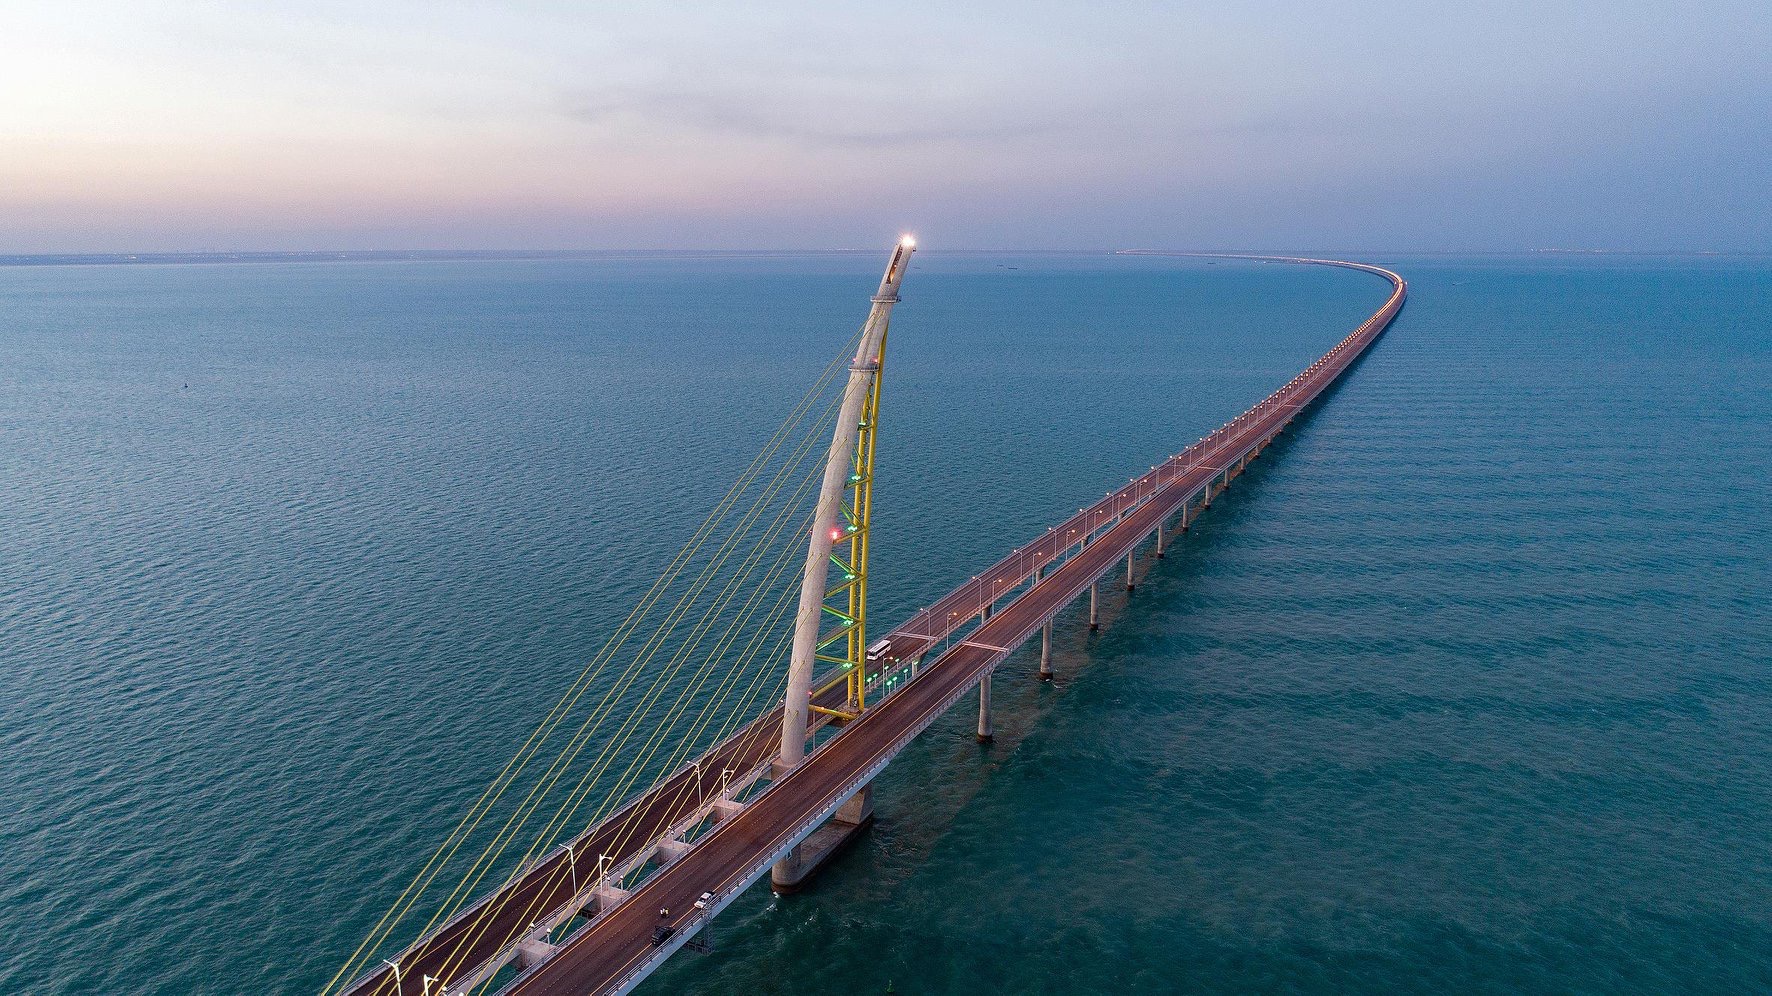 بالصور: الكويت تفتتح أحد أكبر الجسور البحرية في العالم بطول 36 كيلو